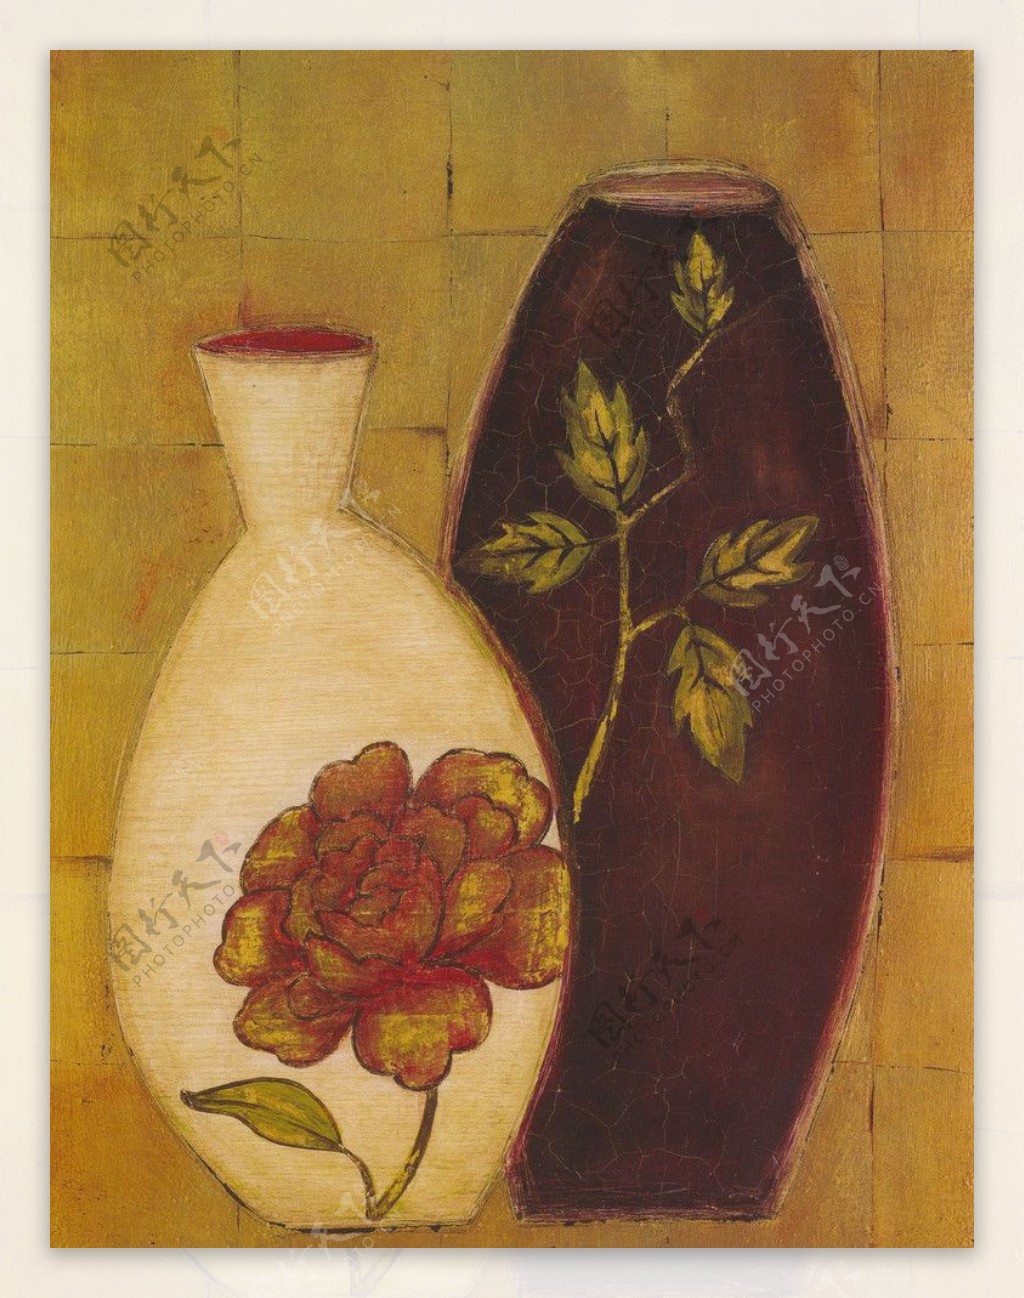 玫瑰花瓶图片